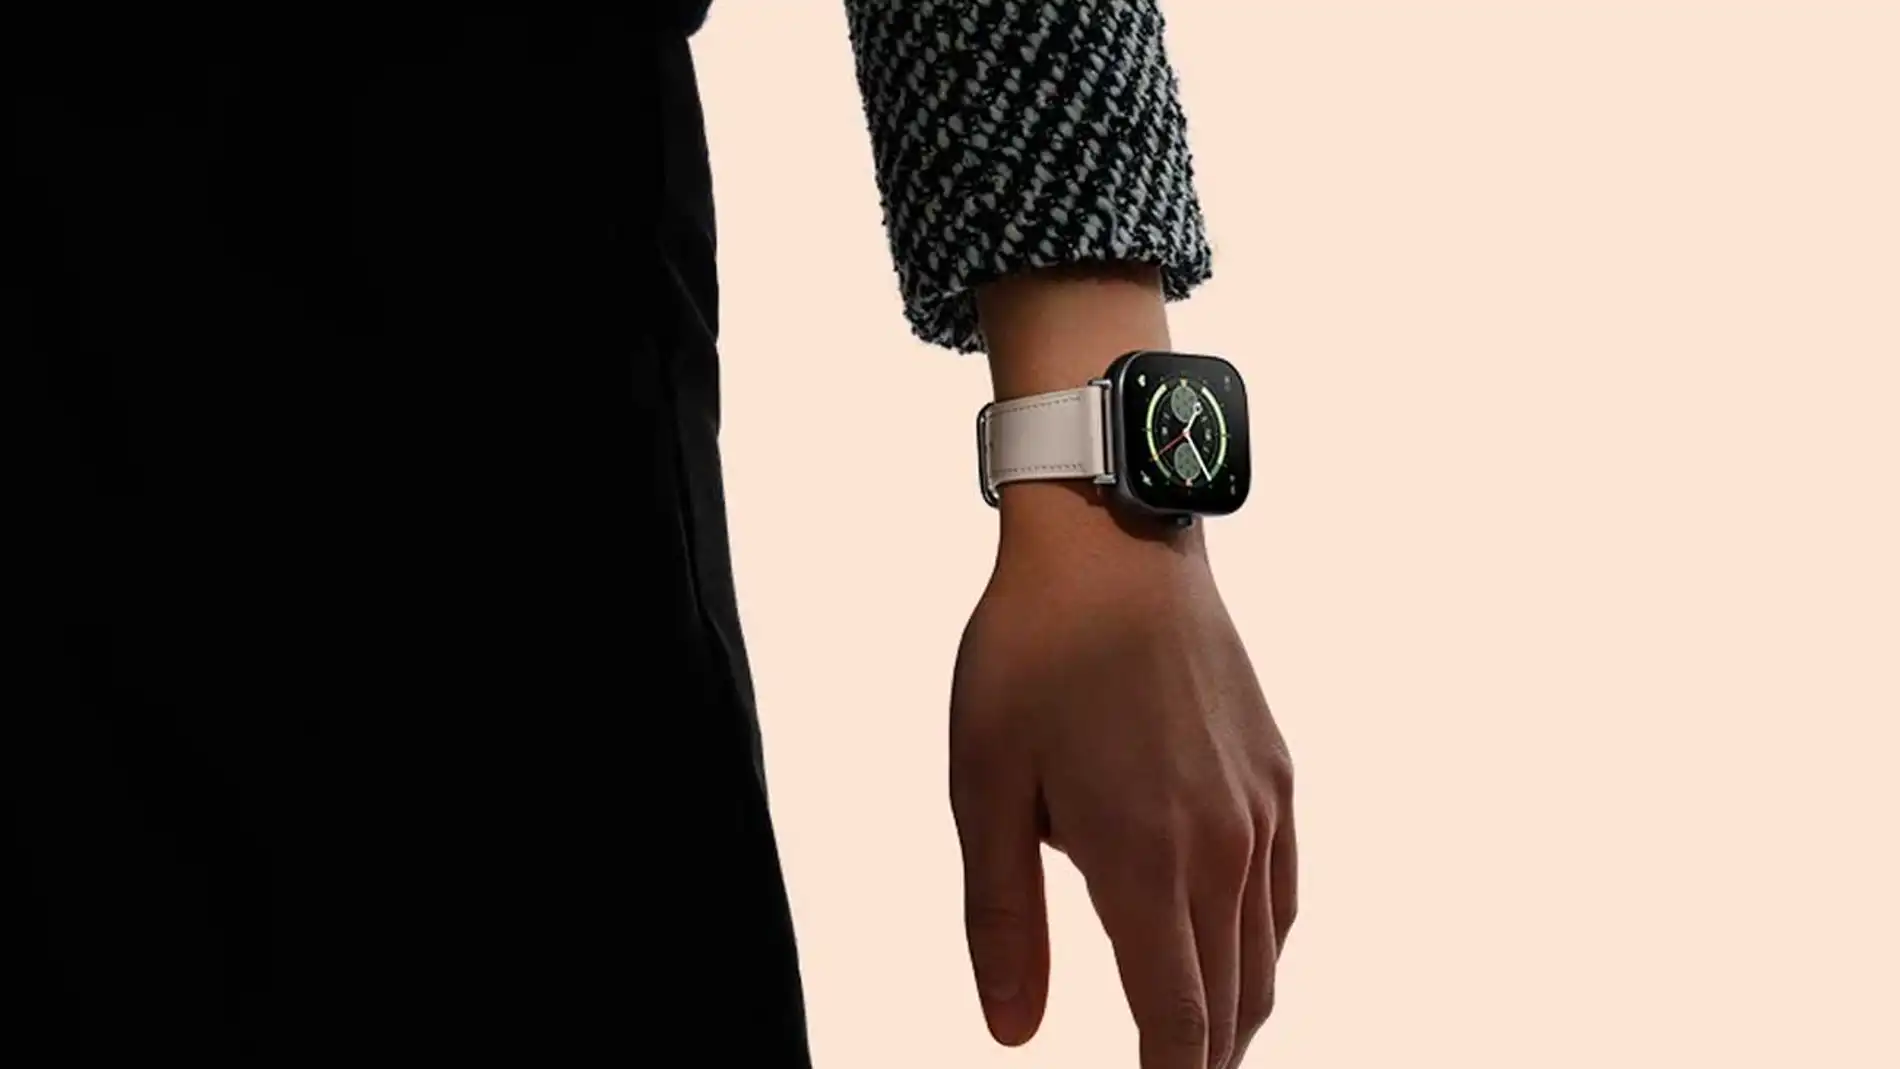 El Redmi Watch 4 es oficial, aspecto de Apple Watch y GPS por poco